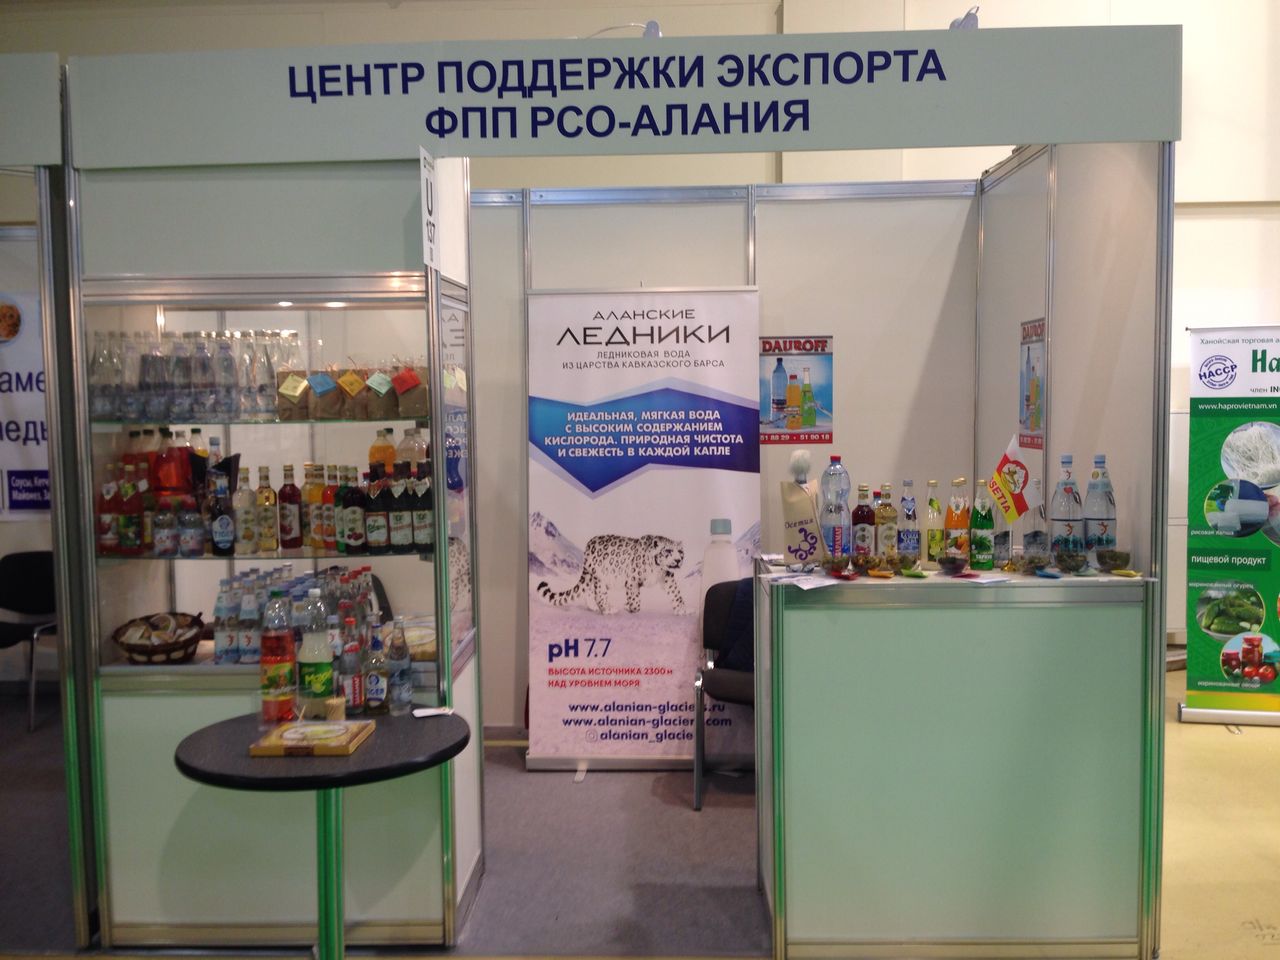 С 17 по 20 сентября 2018 года в г. Москве проходит международная продовольственная выставка WorldFood Moscow 2018